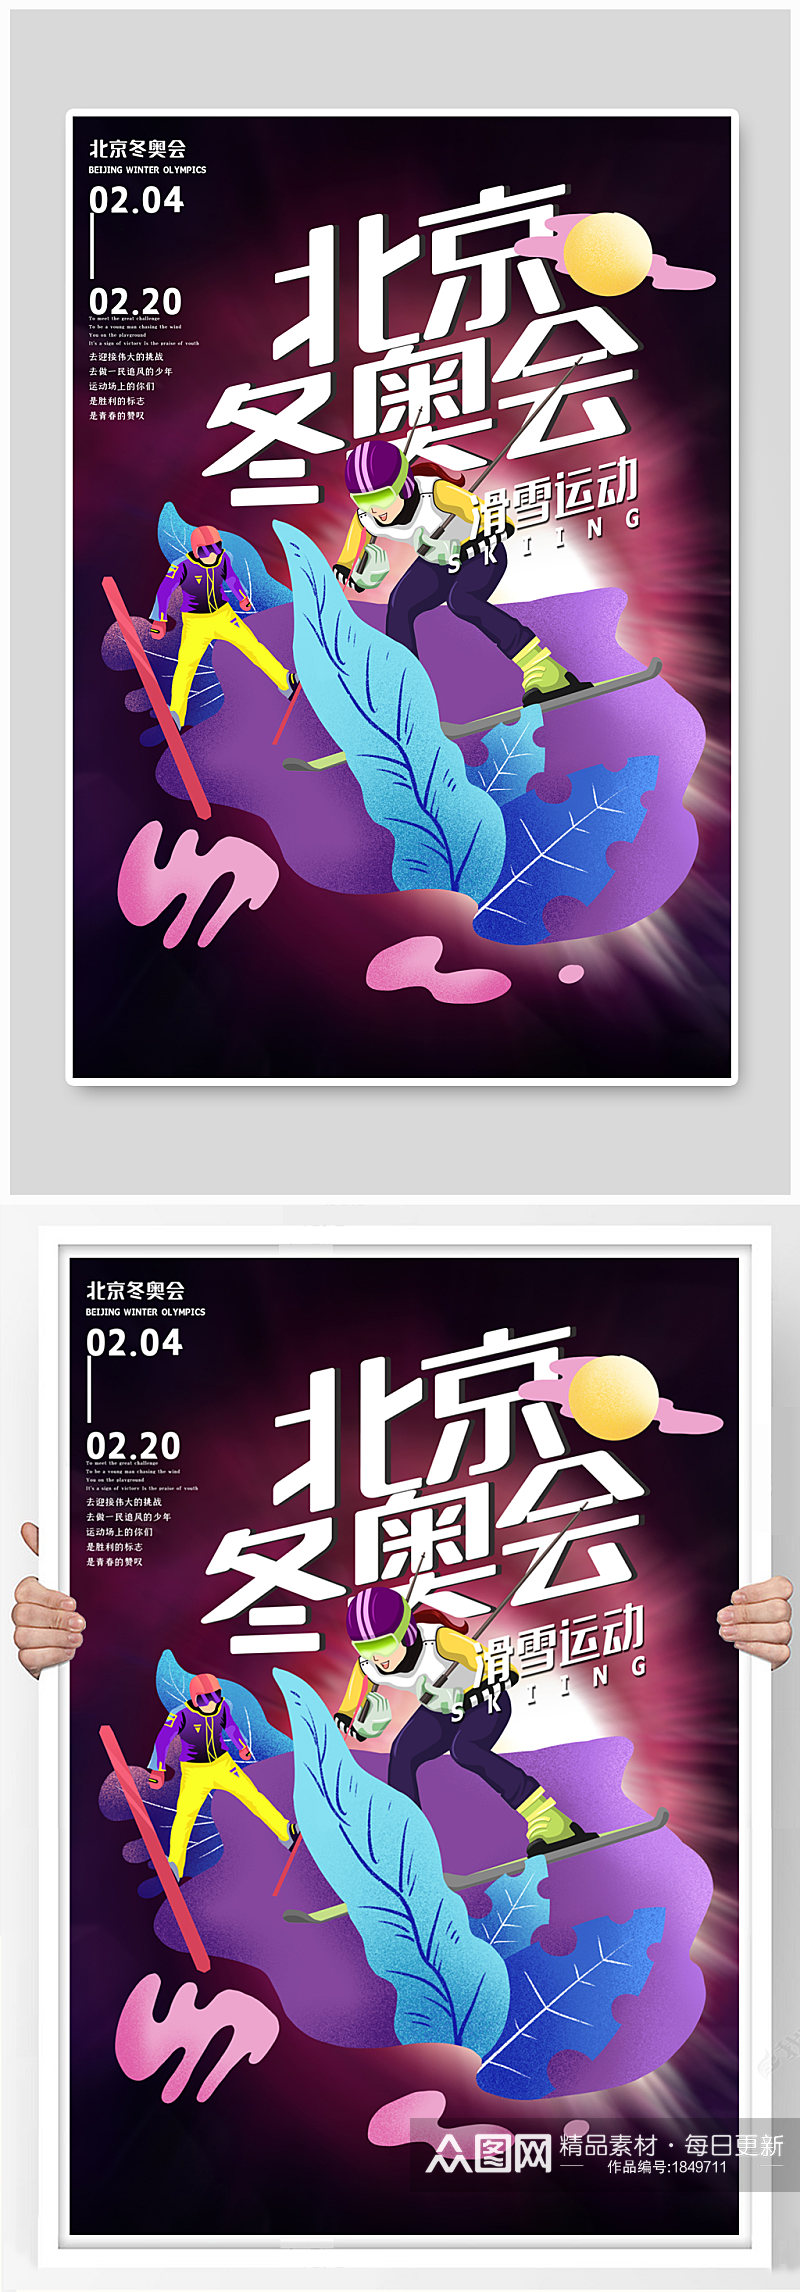 北京冬奥会滑雪项目紫色创意海报素材